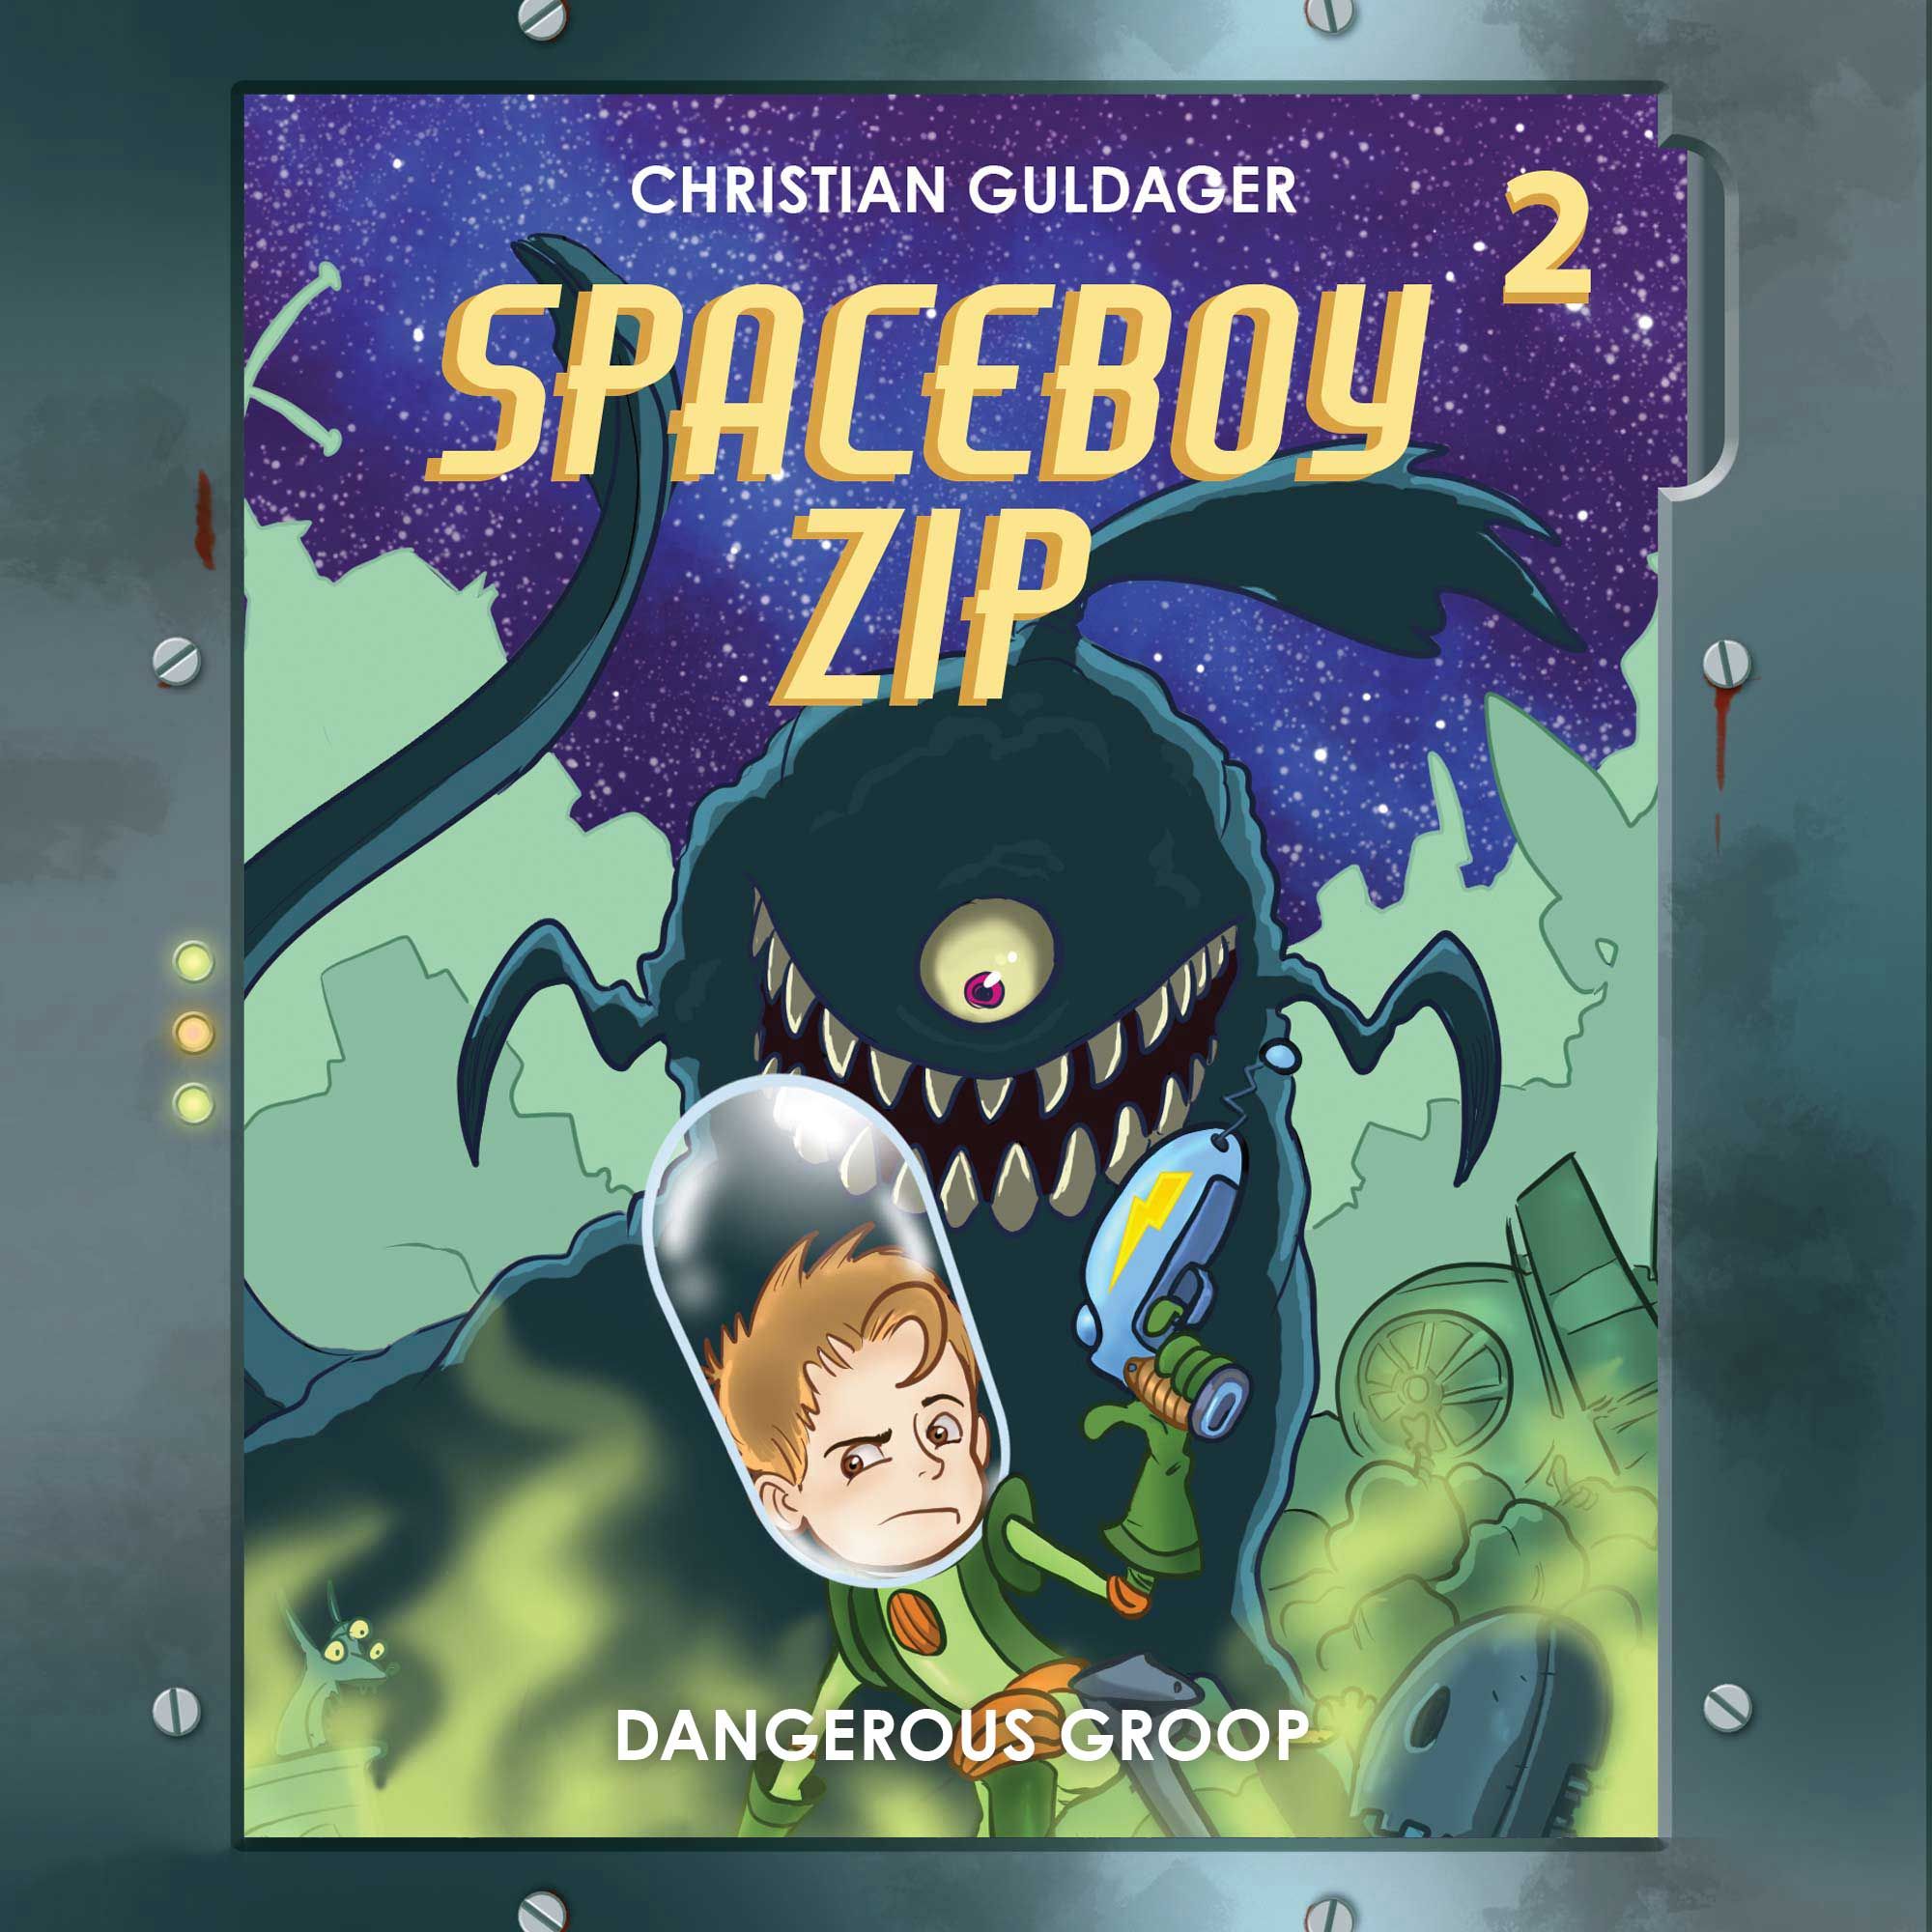 Spaceboy Zip #2: The Dangerous Groop, ljudbok av Christian Guldager